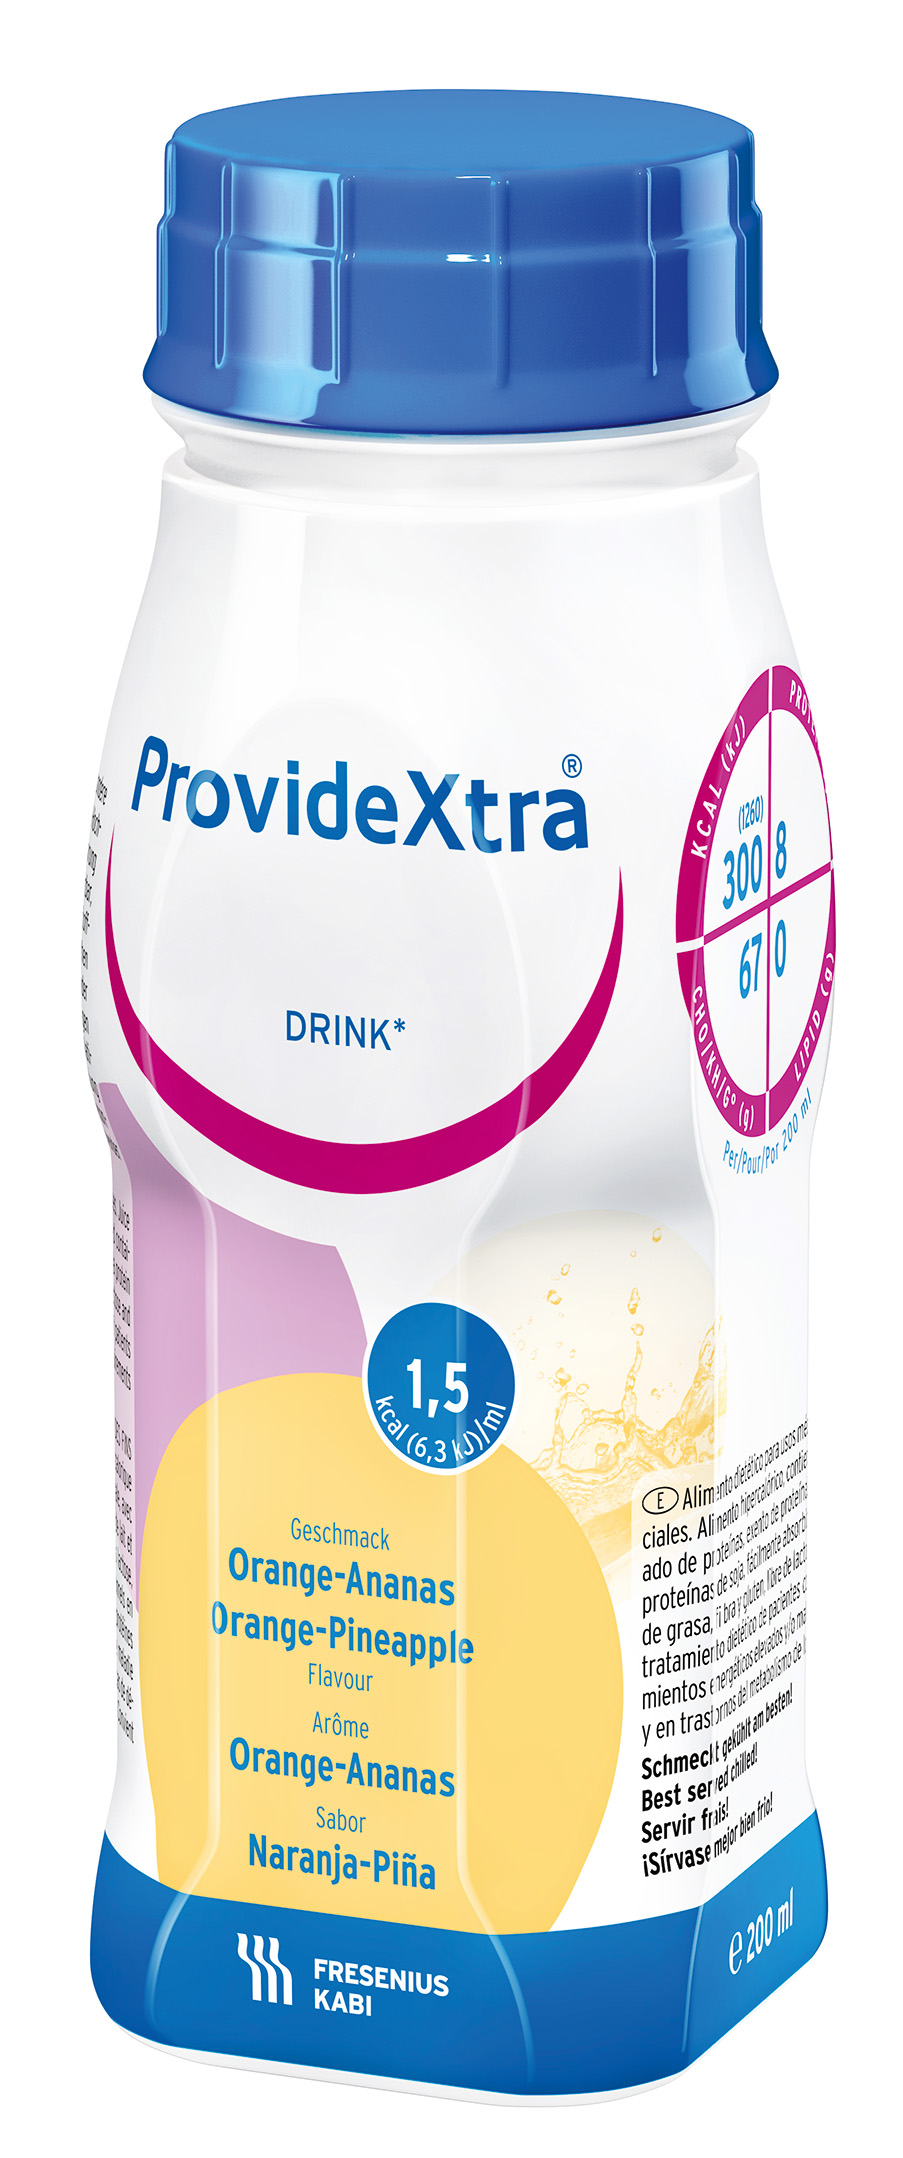 Providextra Drink appelsin/ananas, 4x200